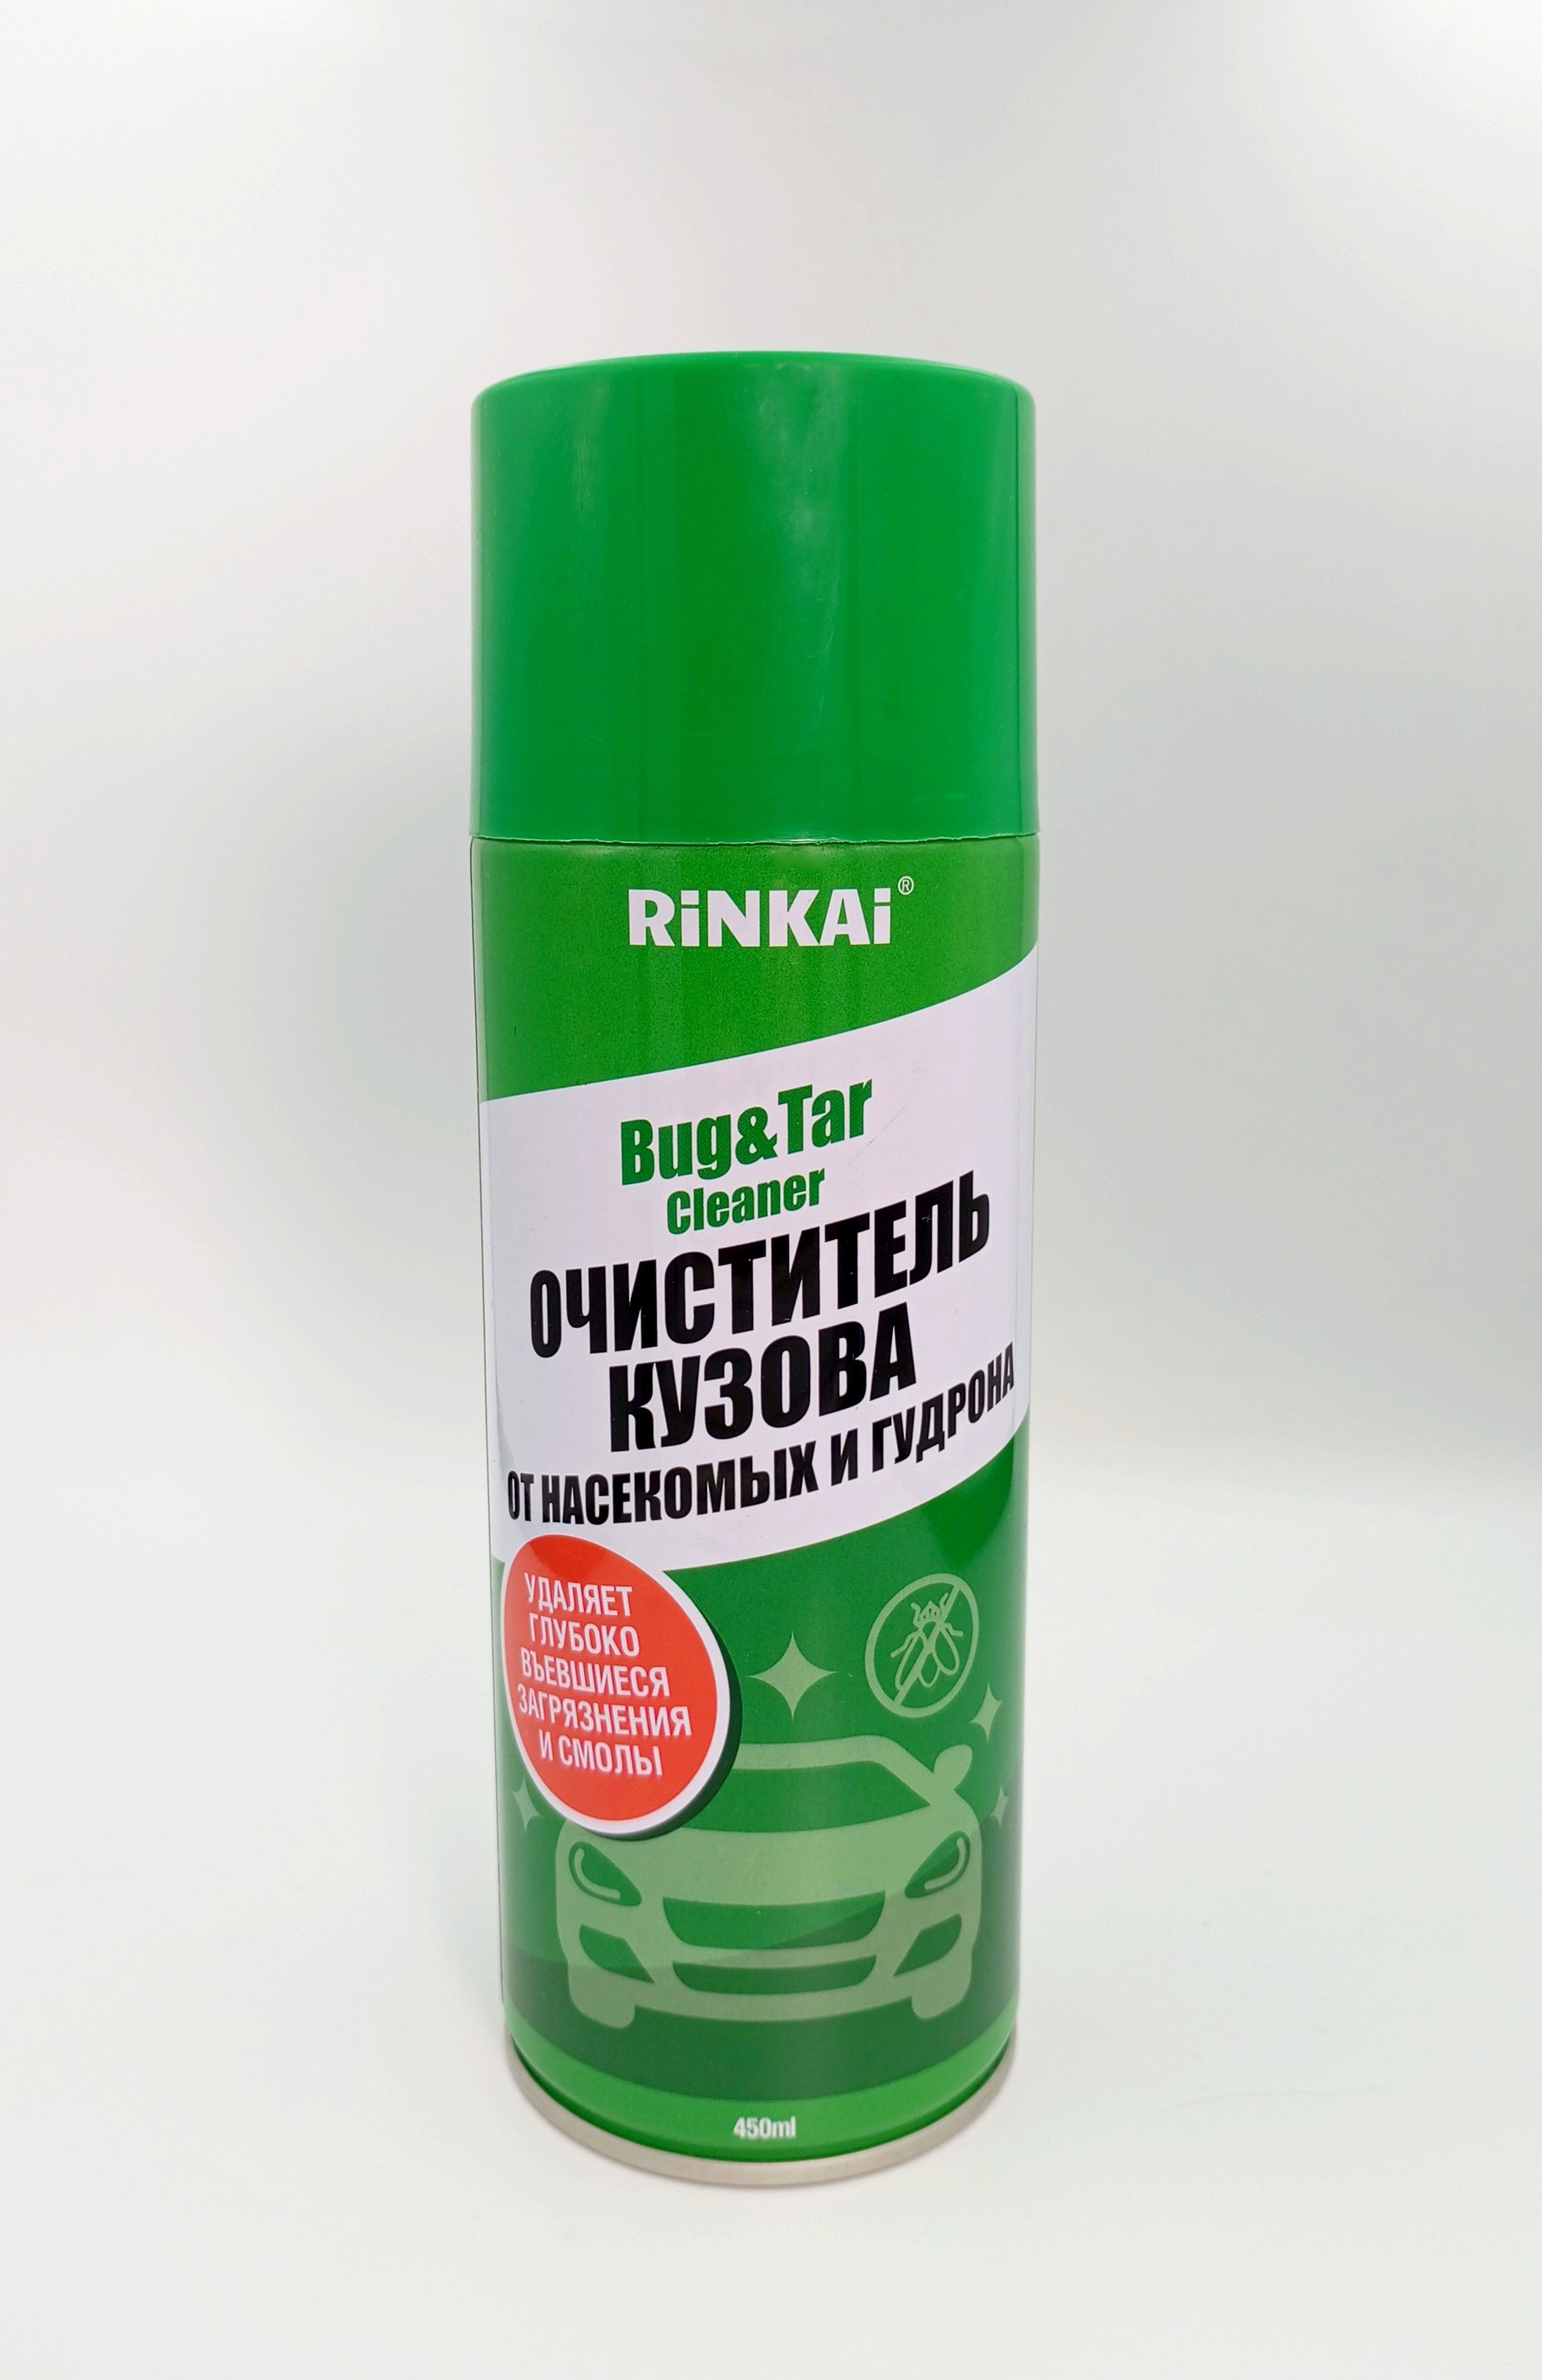 Rinkai Bug & Tar Cleaner Очиститель кузова от насекомых и гудрона аэрозольный 450 мл